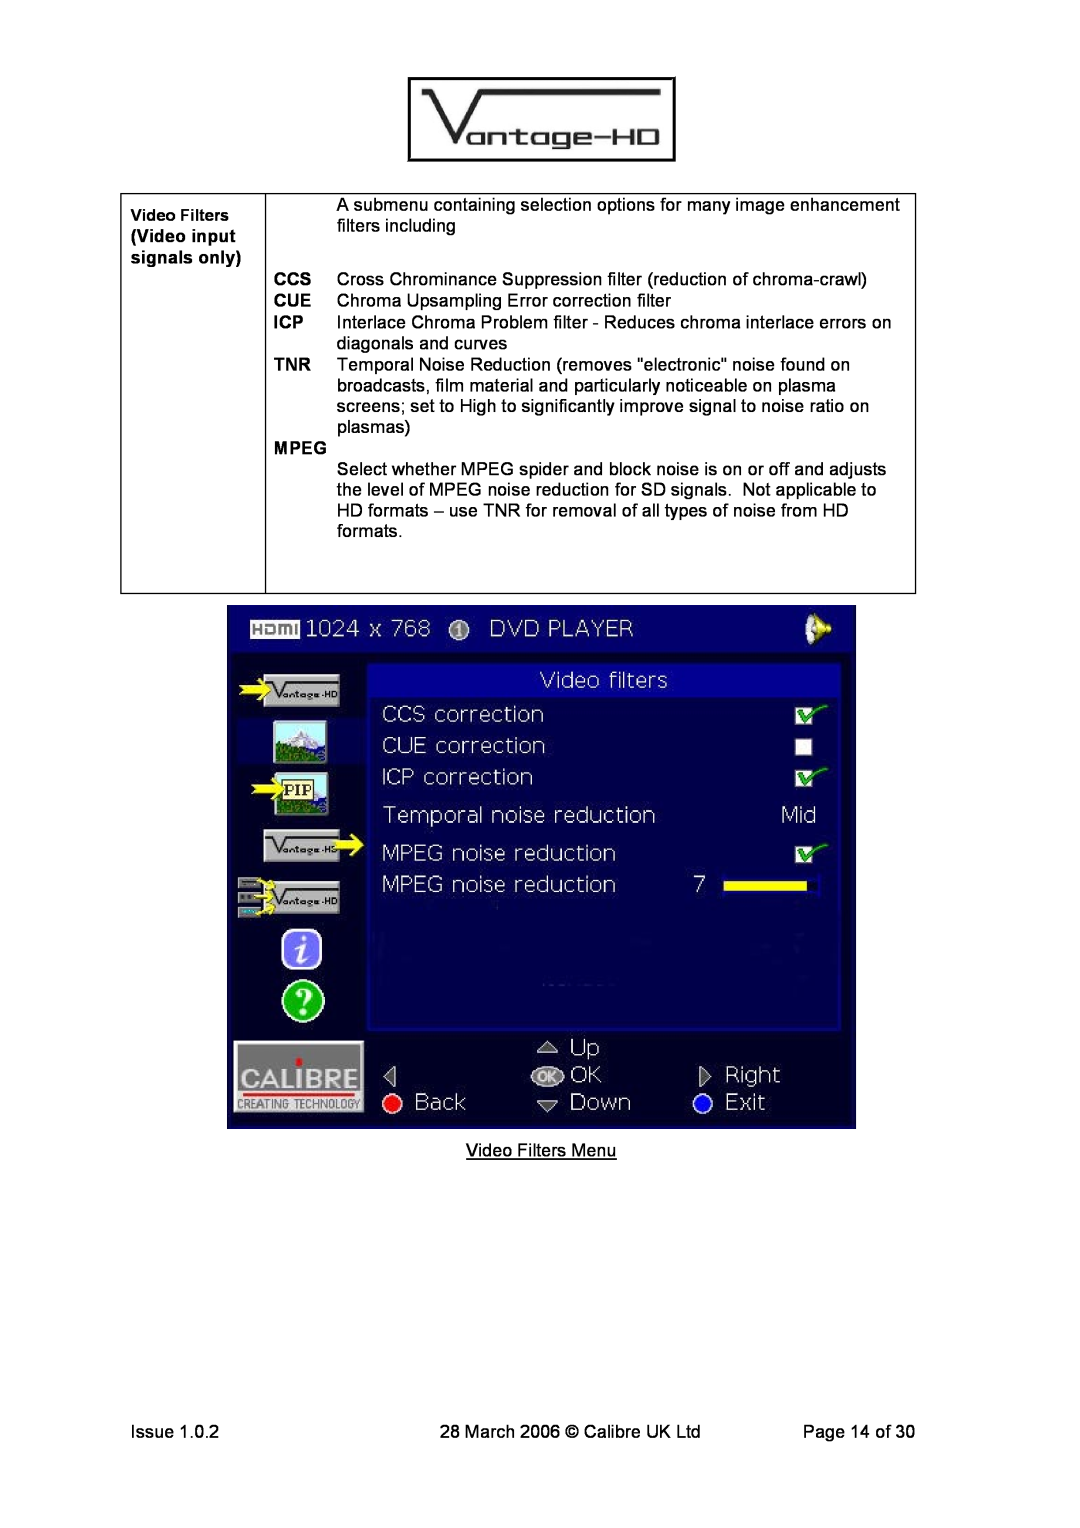 Calibre UK VANTAGE-HD manual Video input signals only, Mpeg 